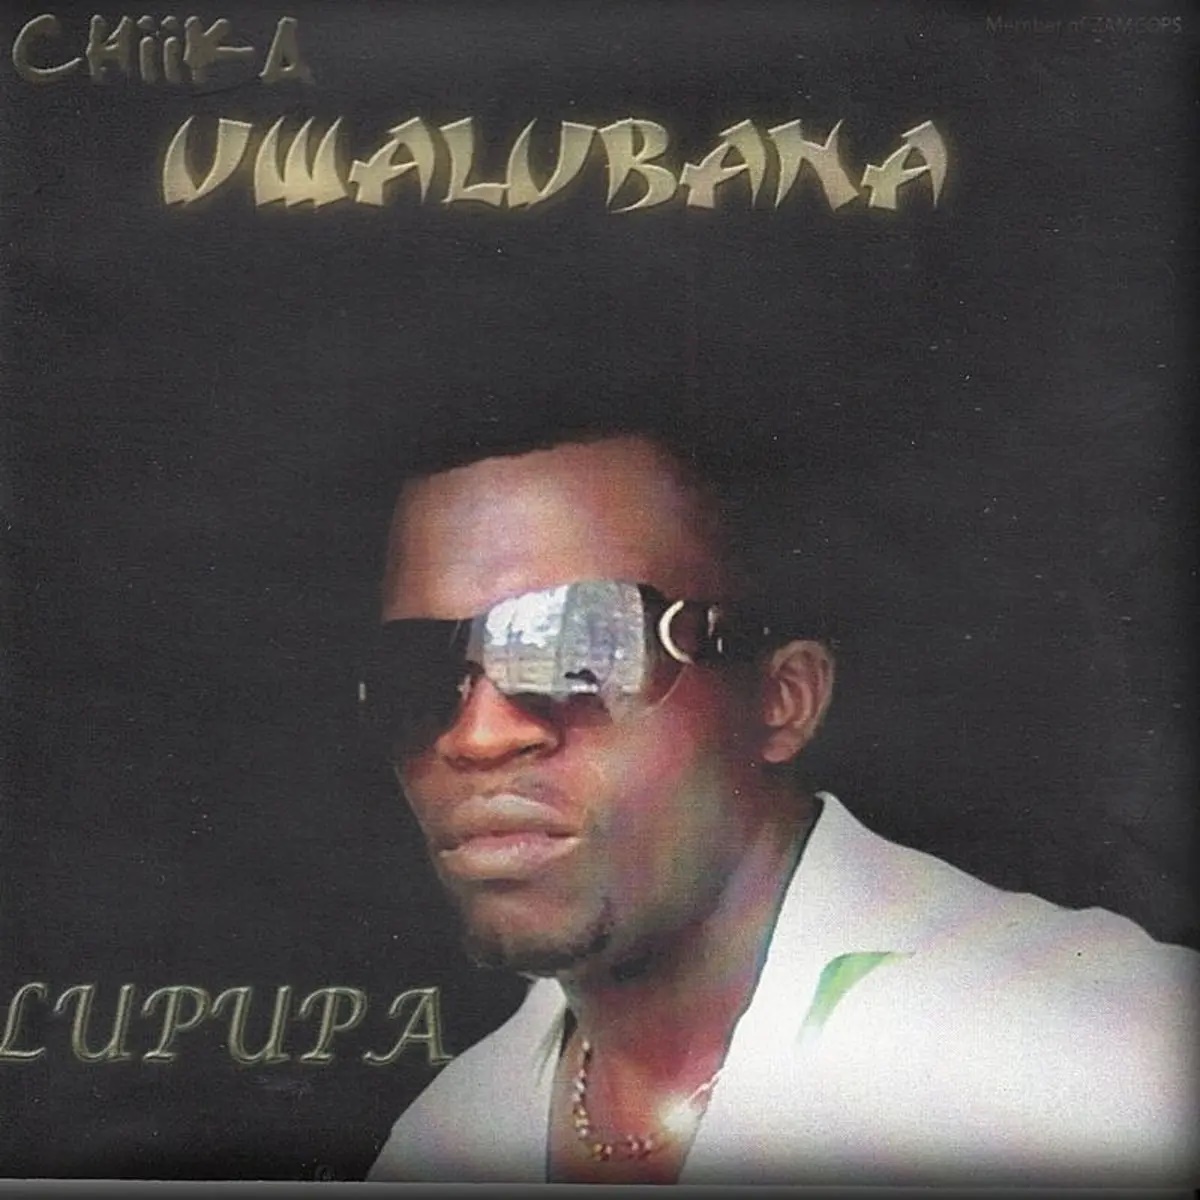 Chika Uwalubana